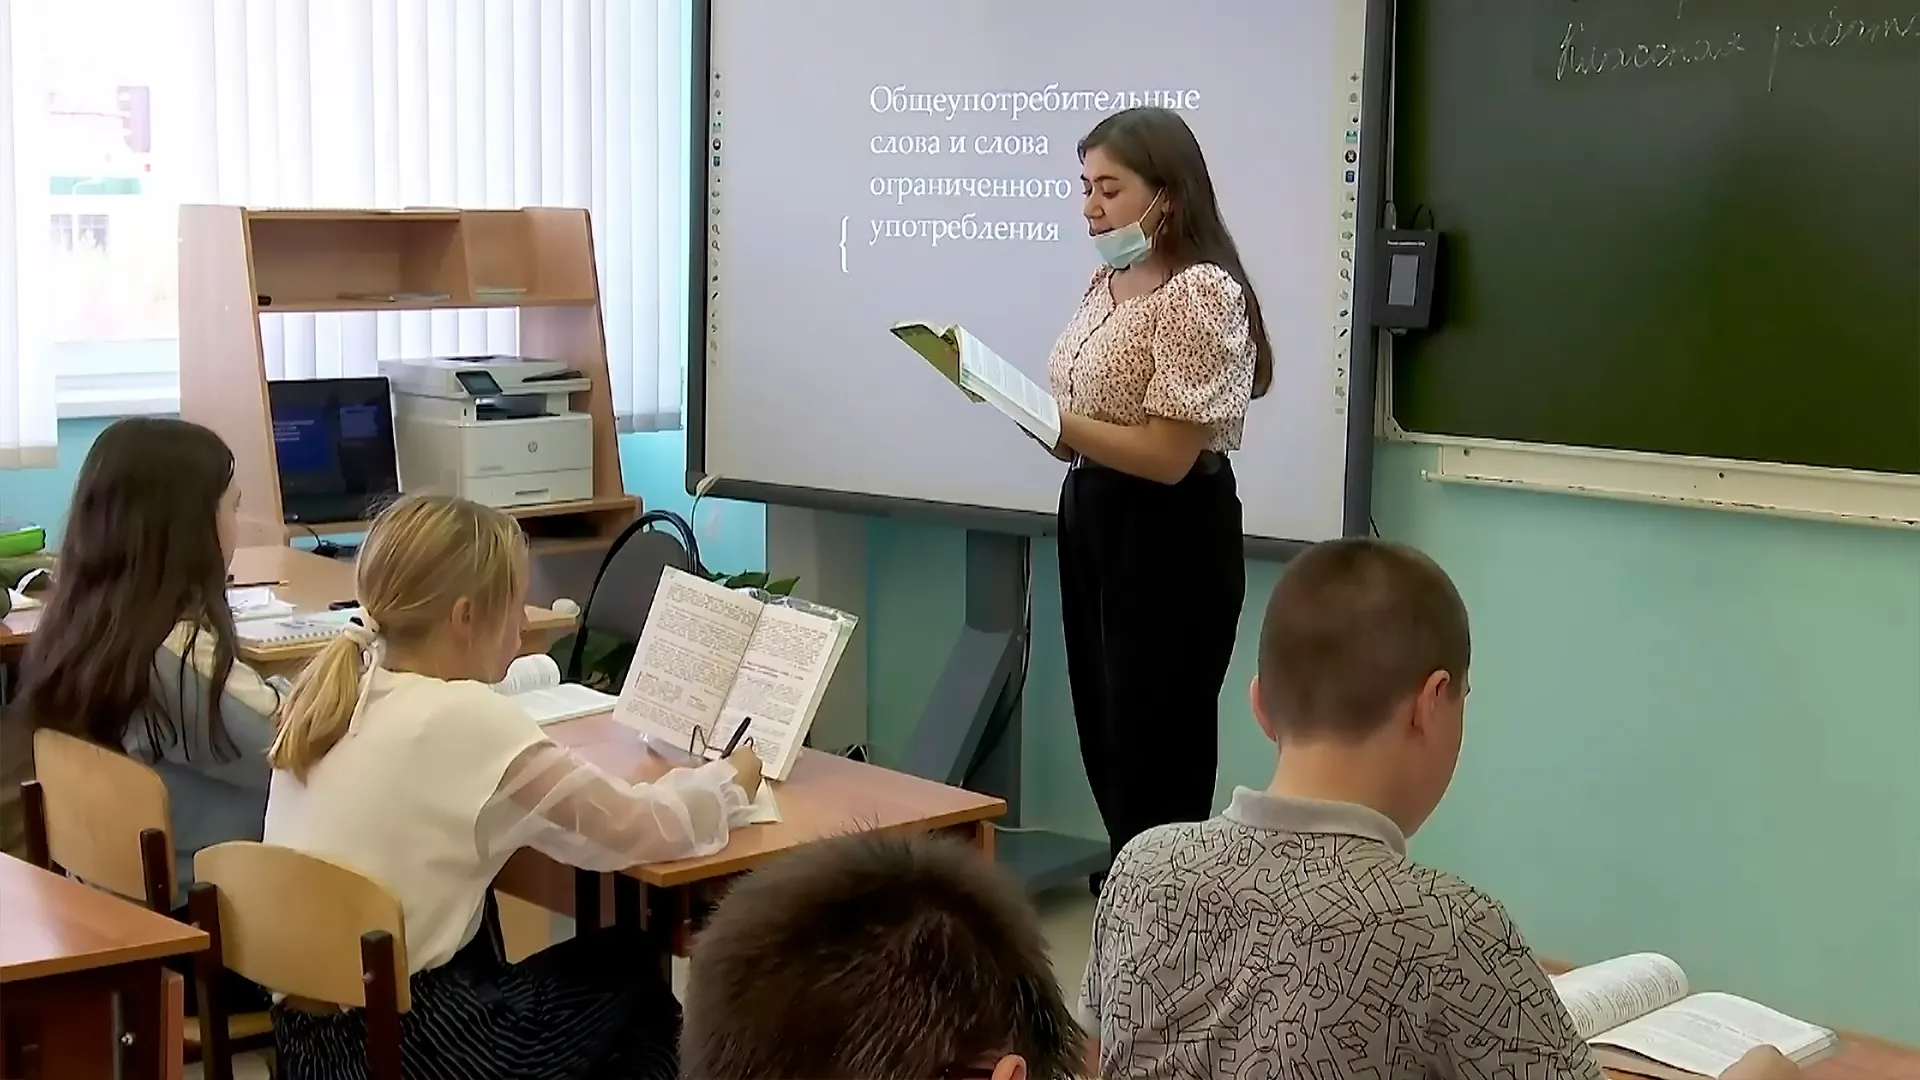 Фото: скрин из видео АНО "Ямал-Медиа"